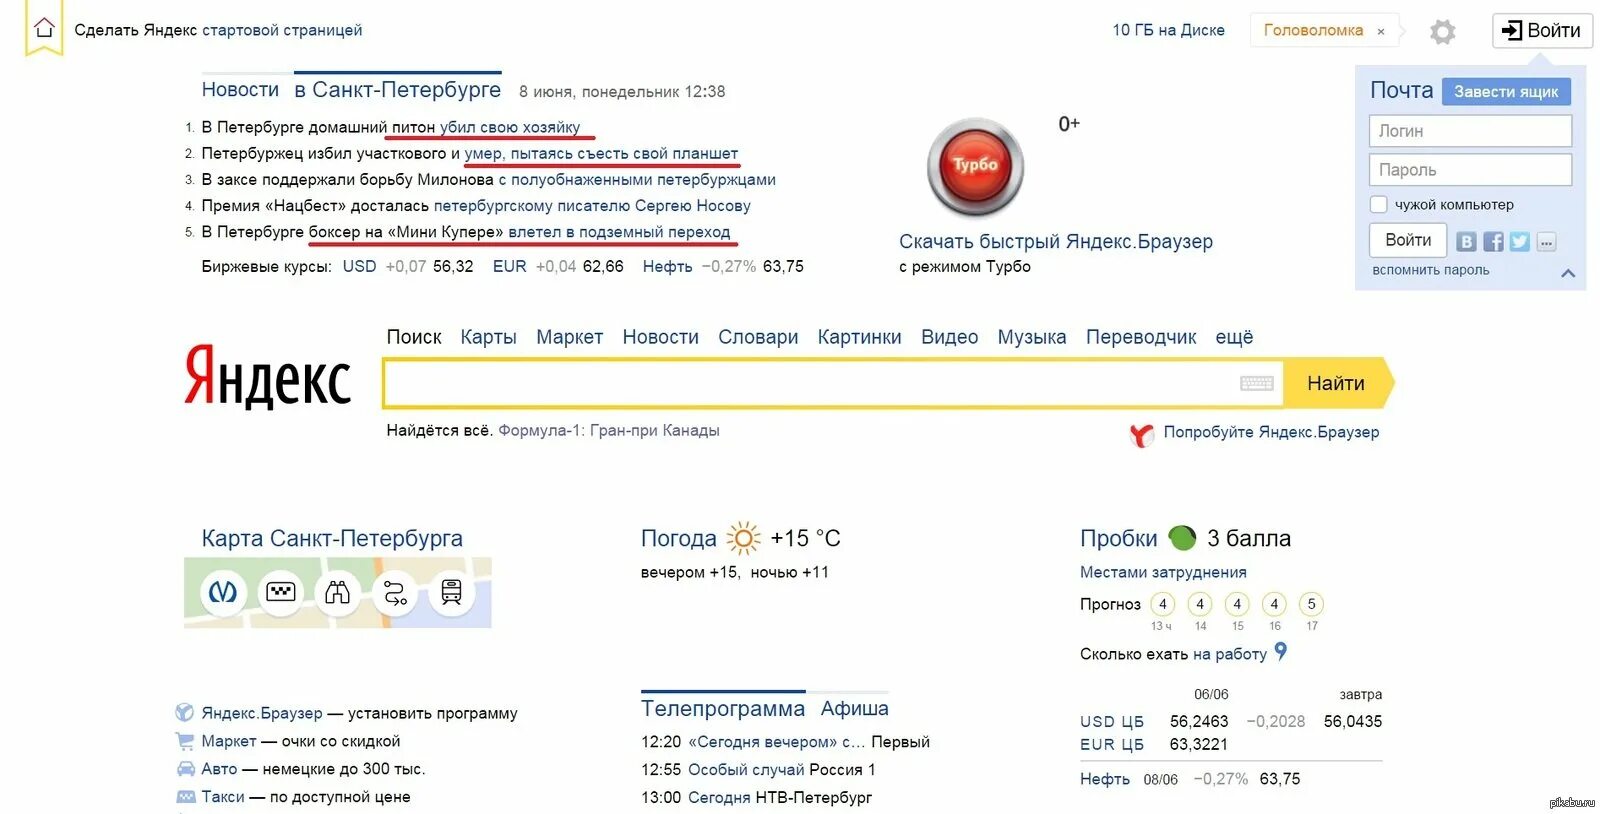 Сайт сделанный на Яндексе.